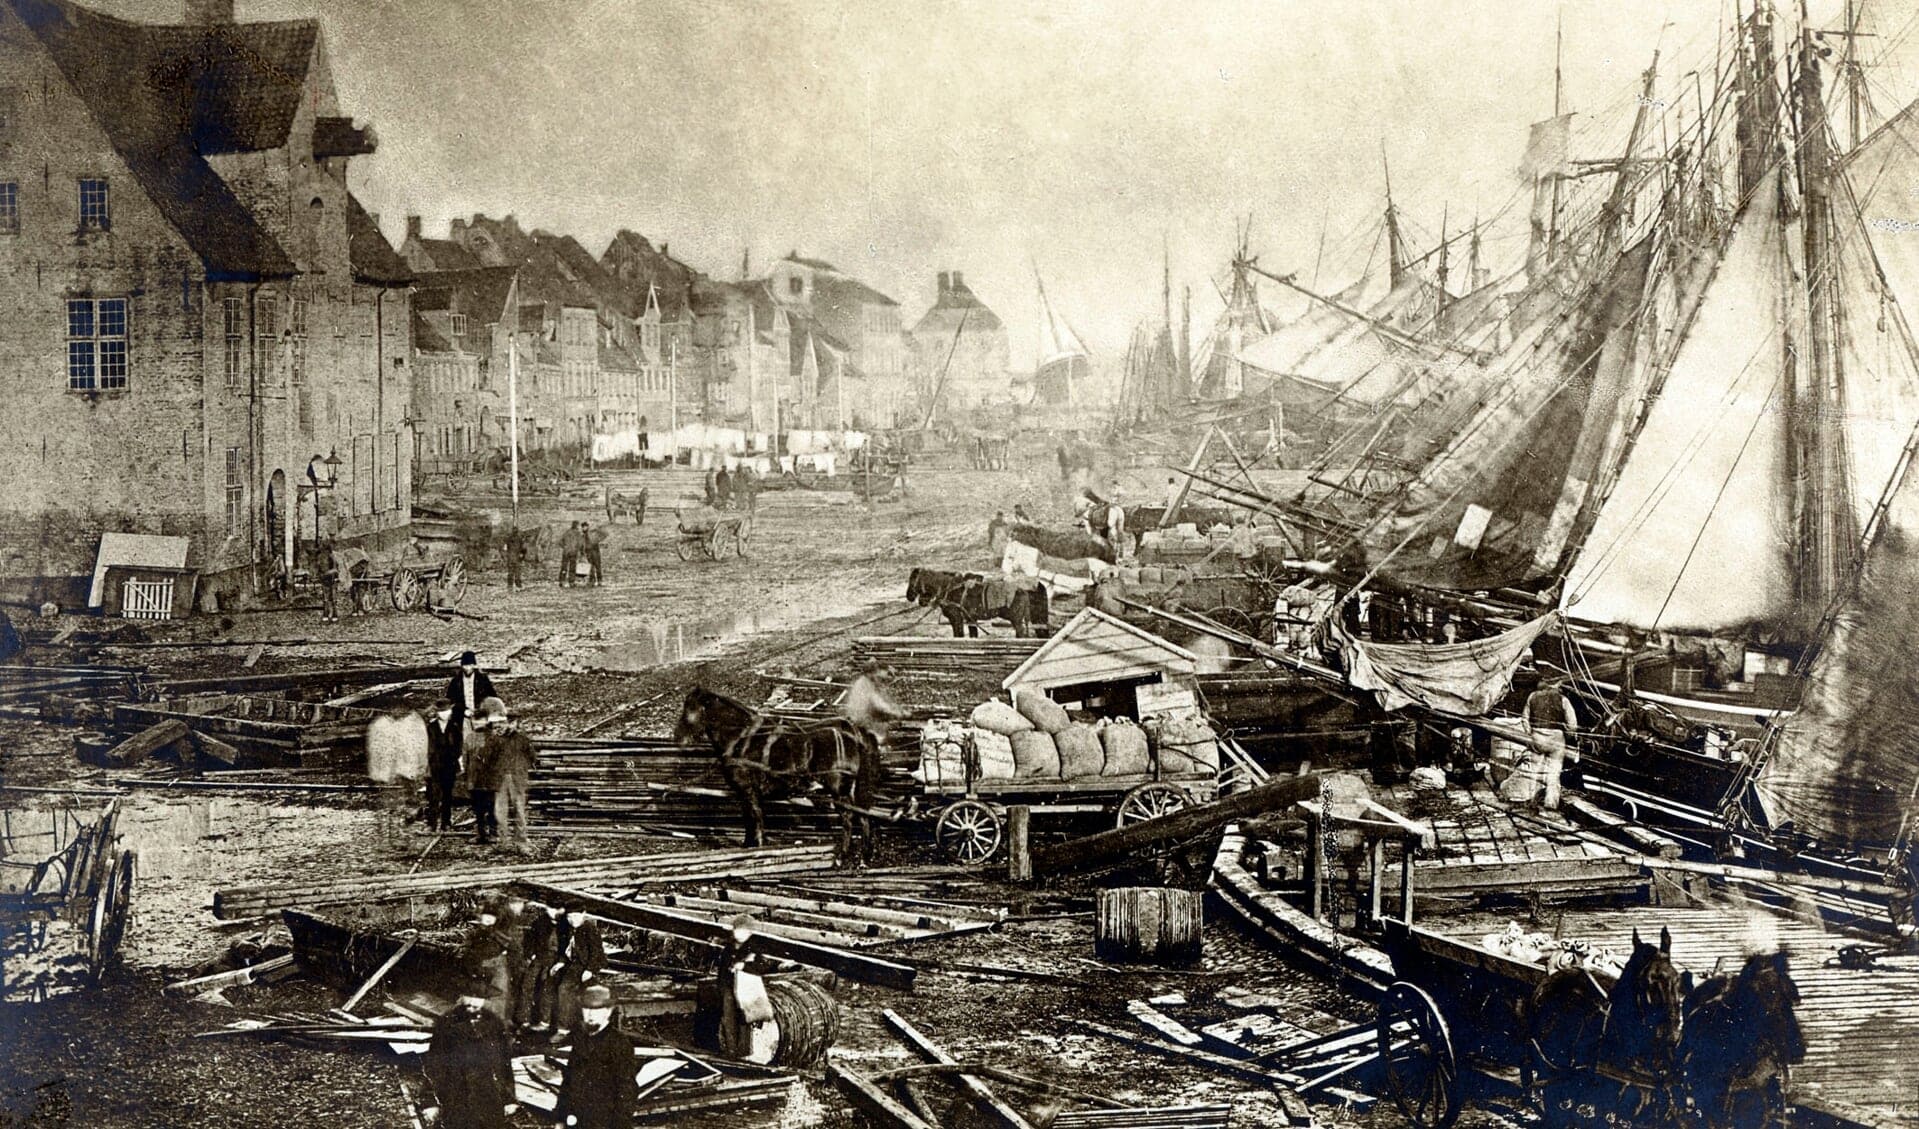 Vortrag: Die Katastrophenflut von 1872 – Entstehung, Auswirkungen und ... kann das nochmals passieren?